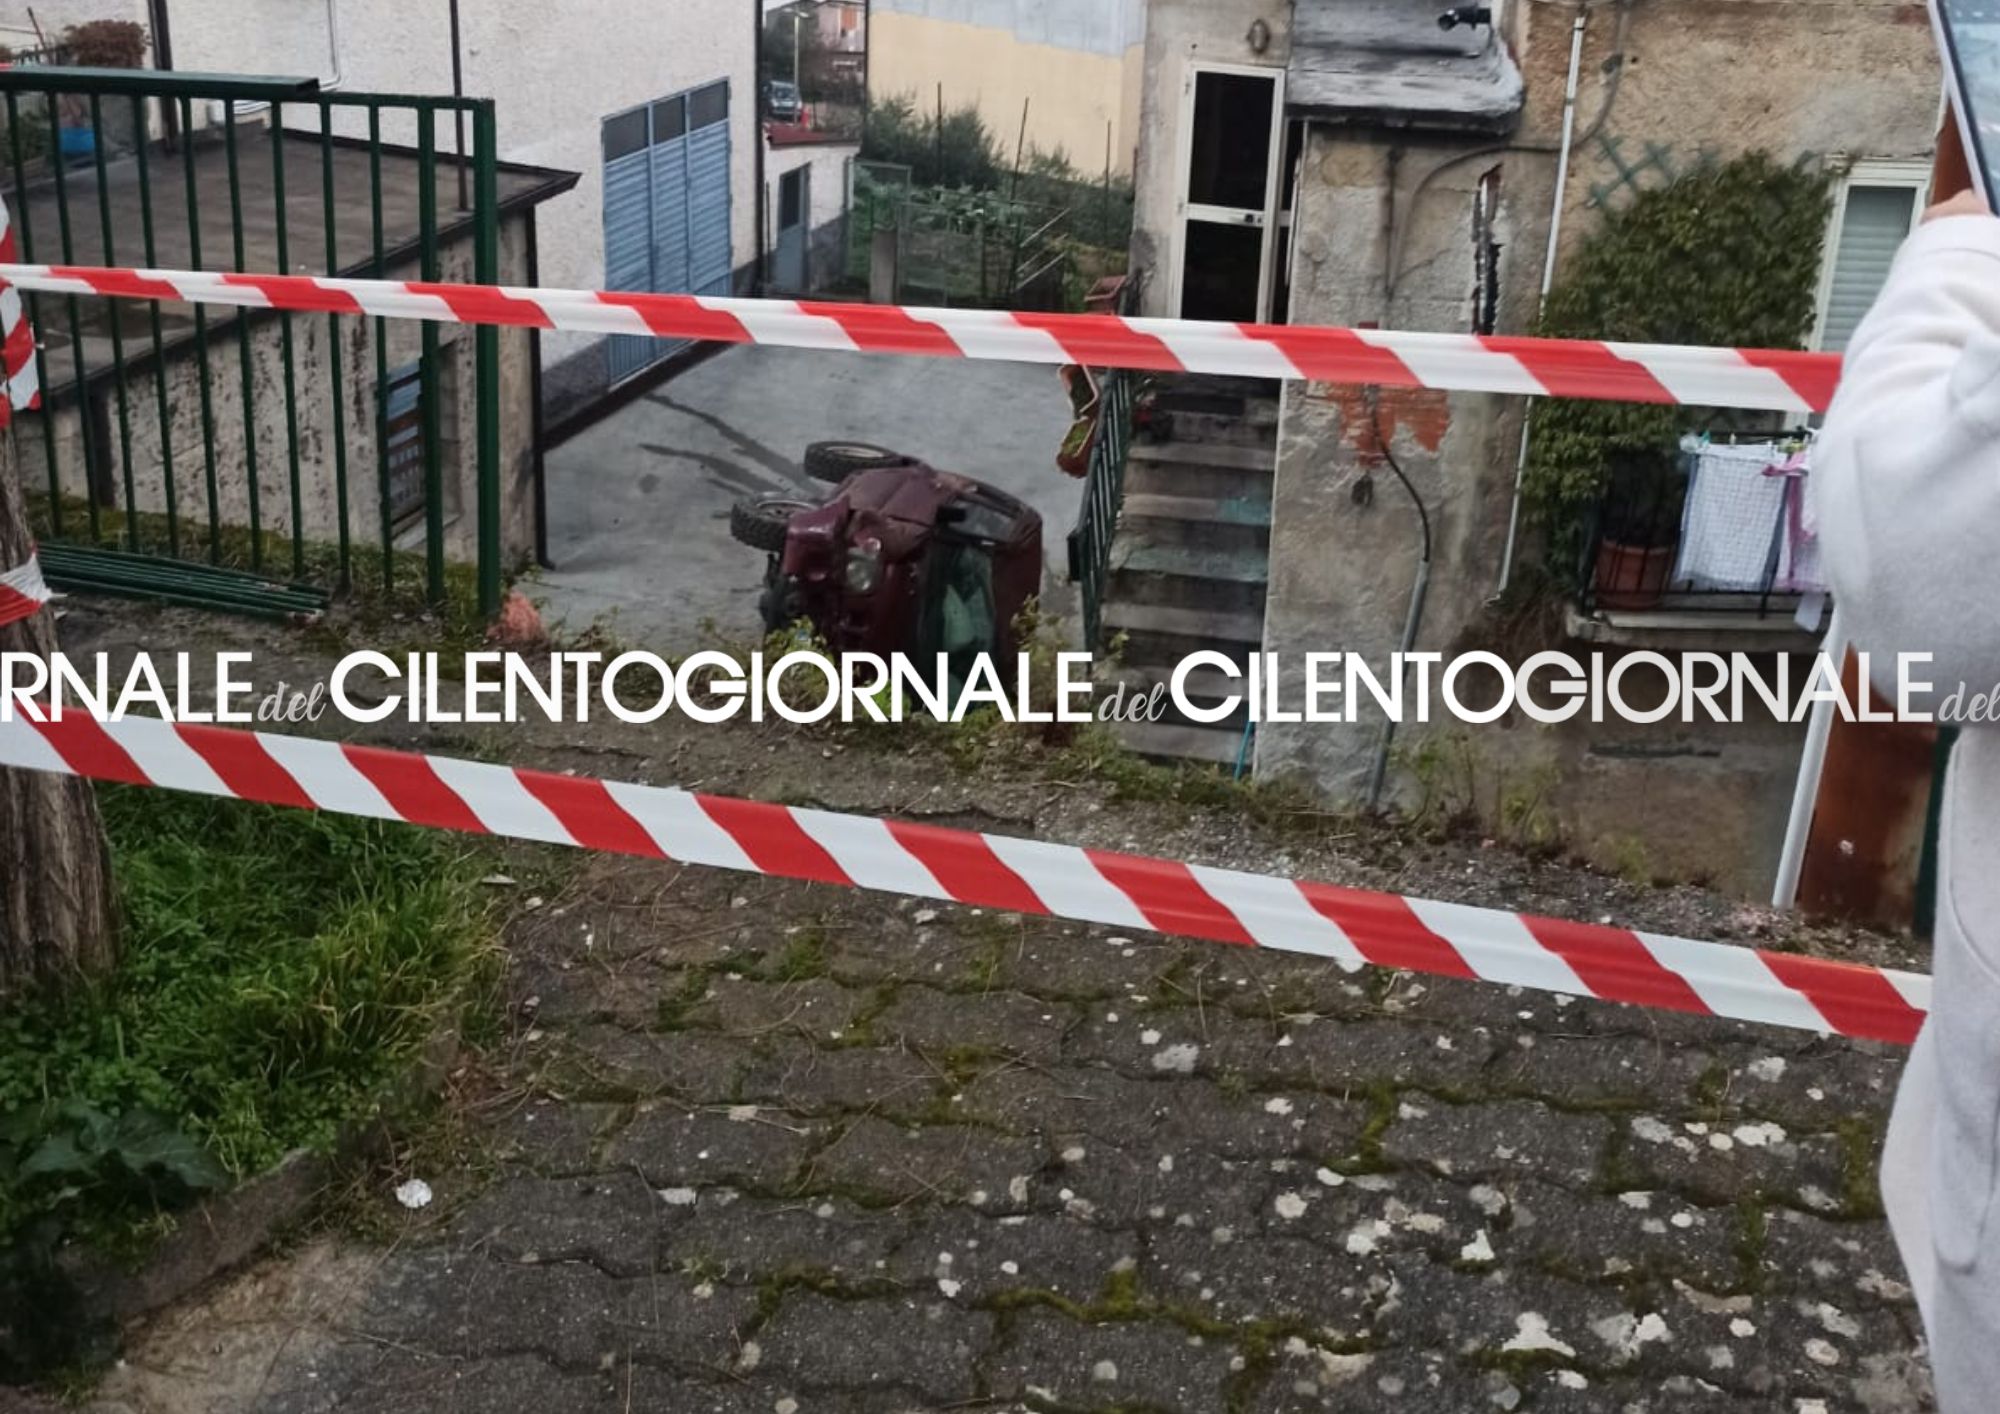 Pauroso incidente a Monte San Giacomo: auto sfonda ringhiera e sfiora abitazione